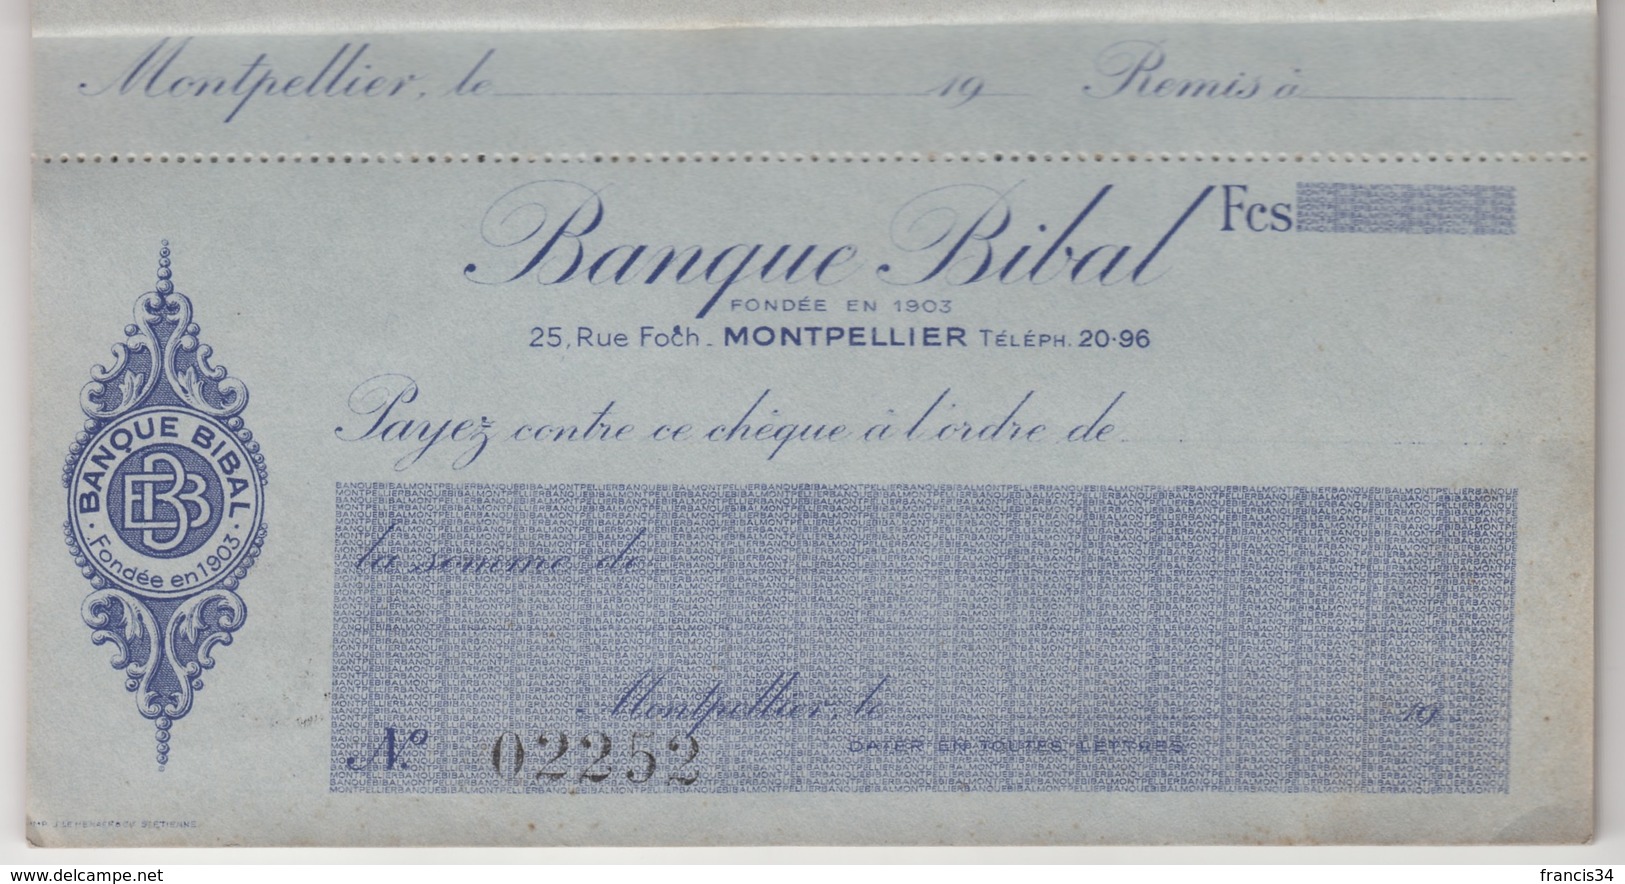 Carnet De Chèques De La Banque Bibal à Montpellier ( Fondée En 1903 ) - Carnet Complet De 14 Chèques - Chèques & Chèques De Voyage